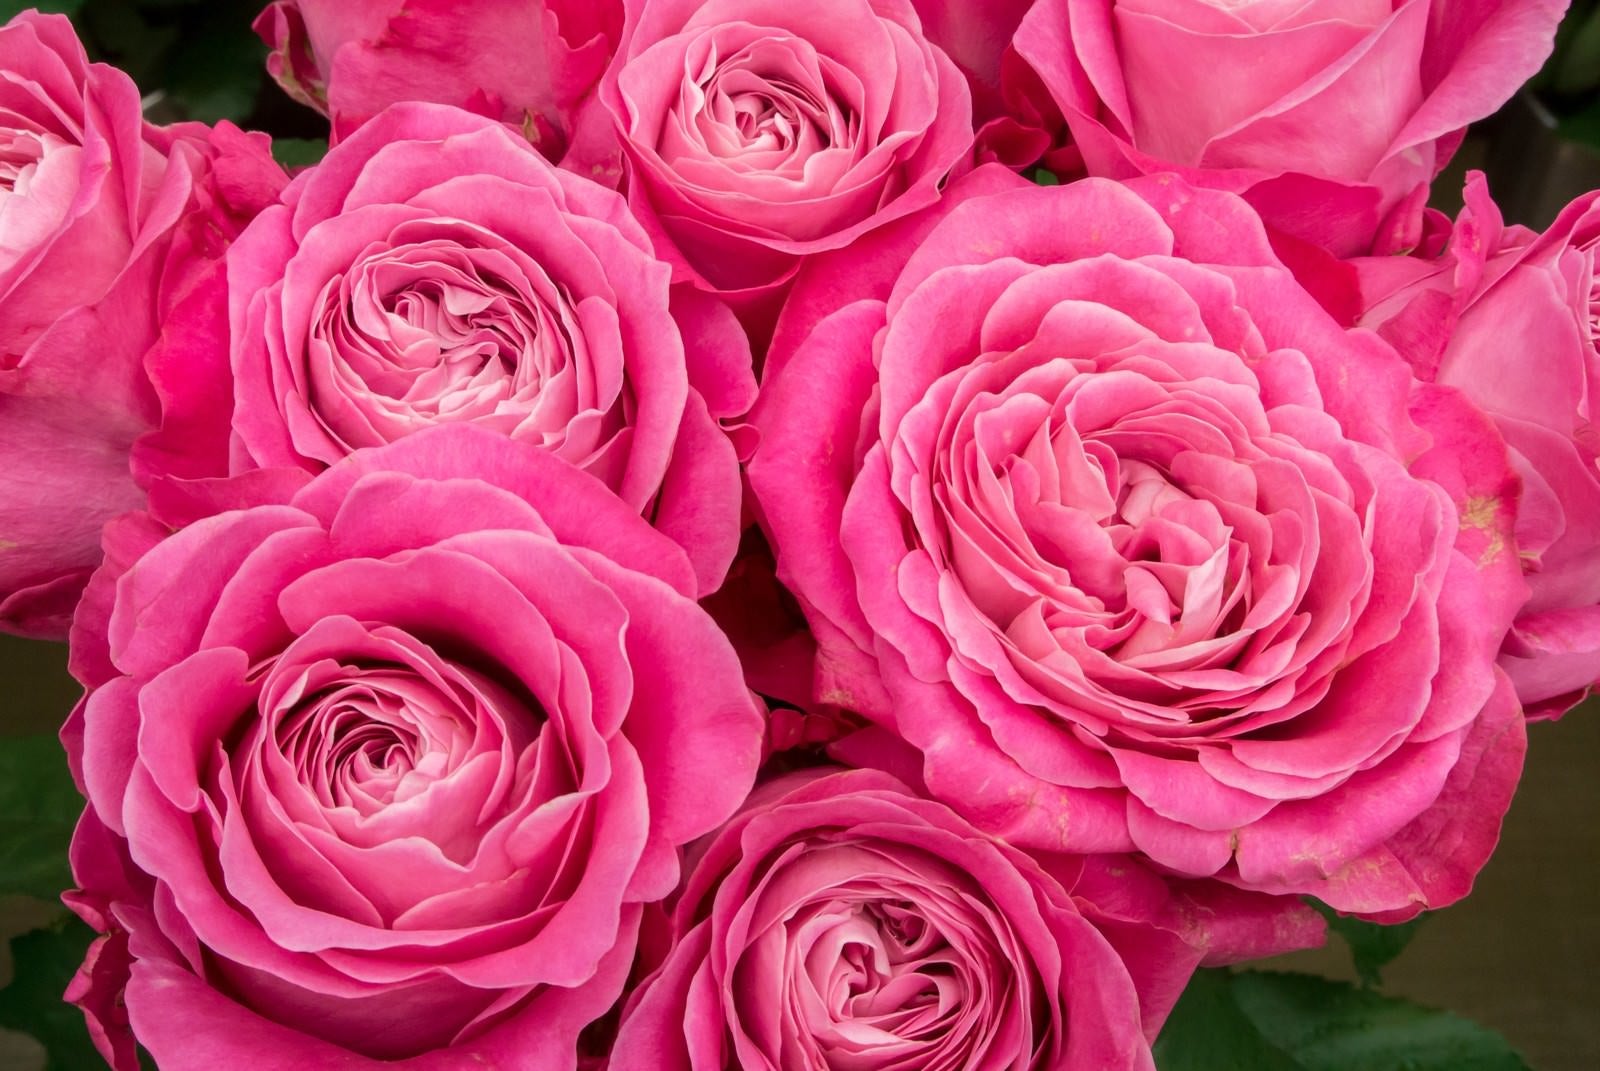 「ピンク色に咲いた薔薇の花」の写真